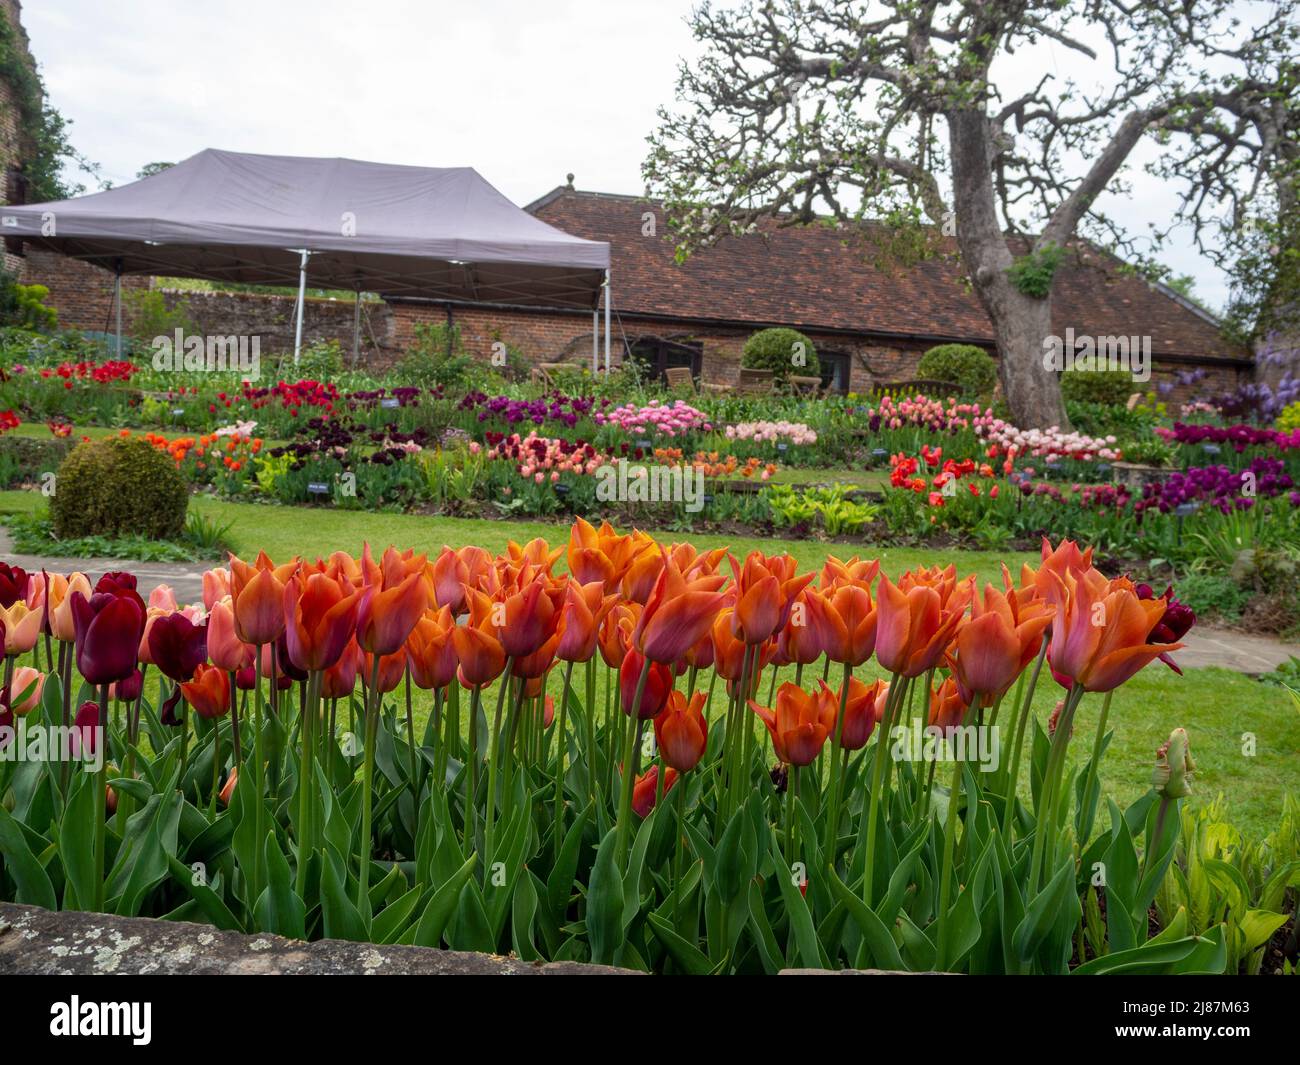 Chenies Manor versunkener Garten Tulpendarstellungen durch den Bogenweg. Tieforange Tulipa 'Cairo' im Vordergrund; Rasen mit rosa, malvenfarbenen, roten Tulpen in Schichten. Stockfoto